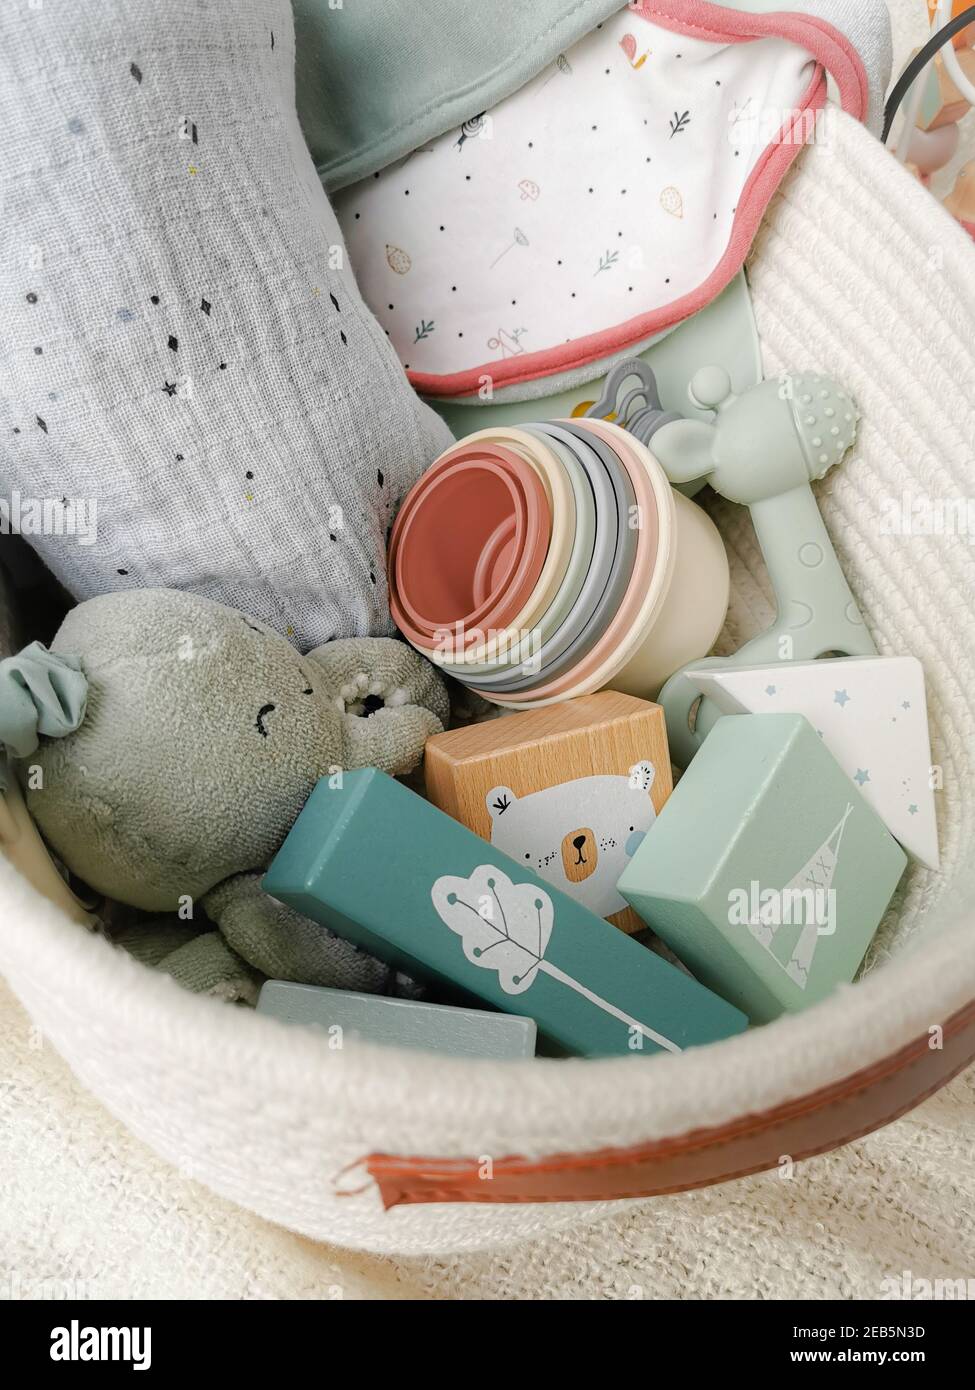 Kit cadeau neutre pour une douche de bébé avec jouets dans des couleurs douces. Parentalité sans sexe. Banque D'Images